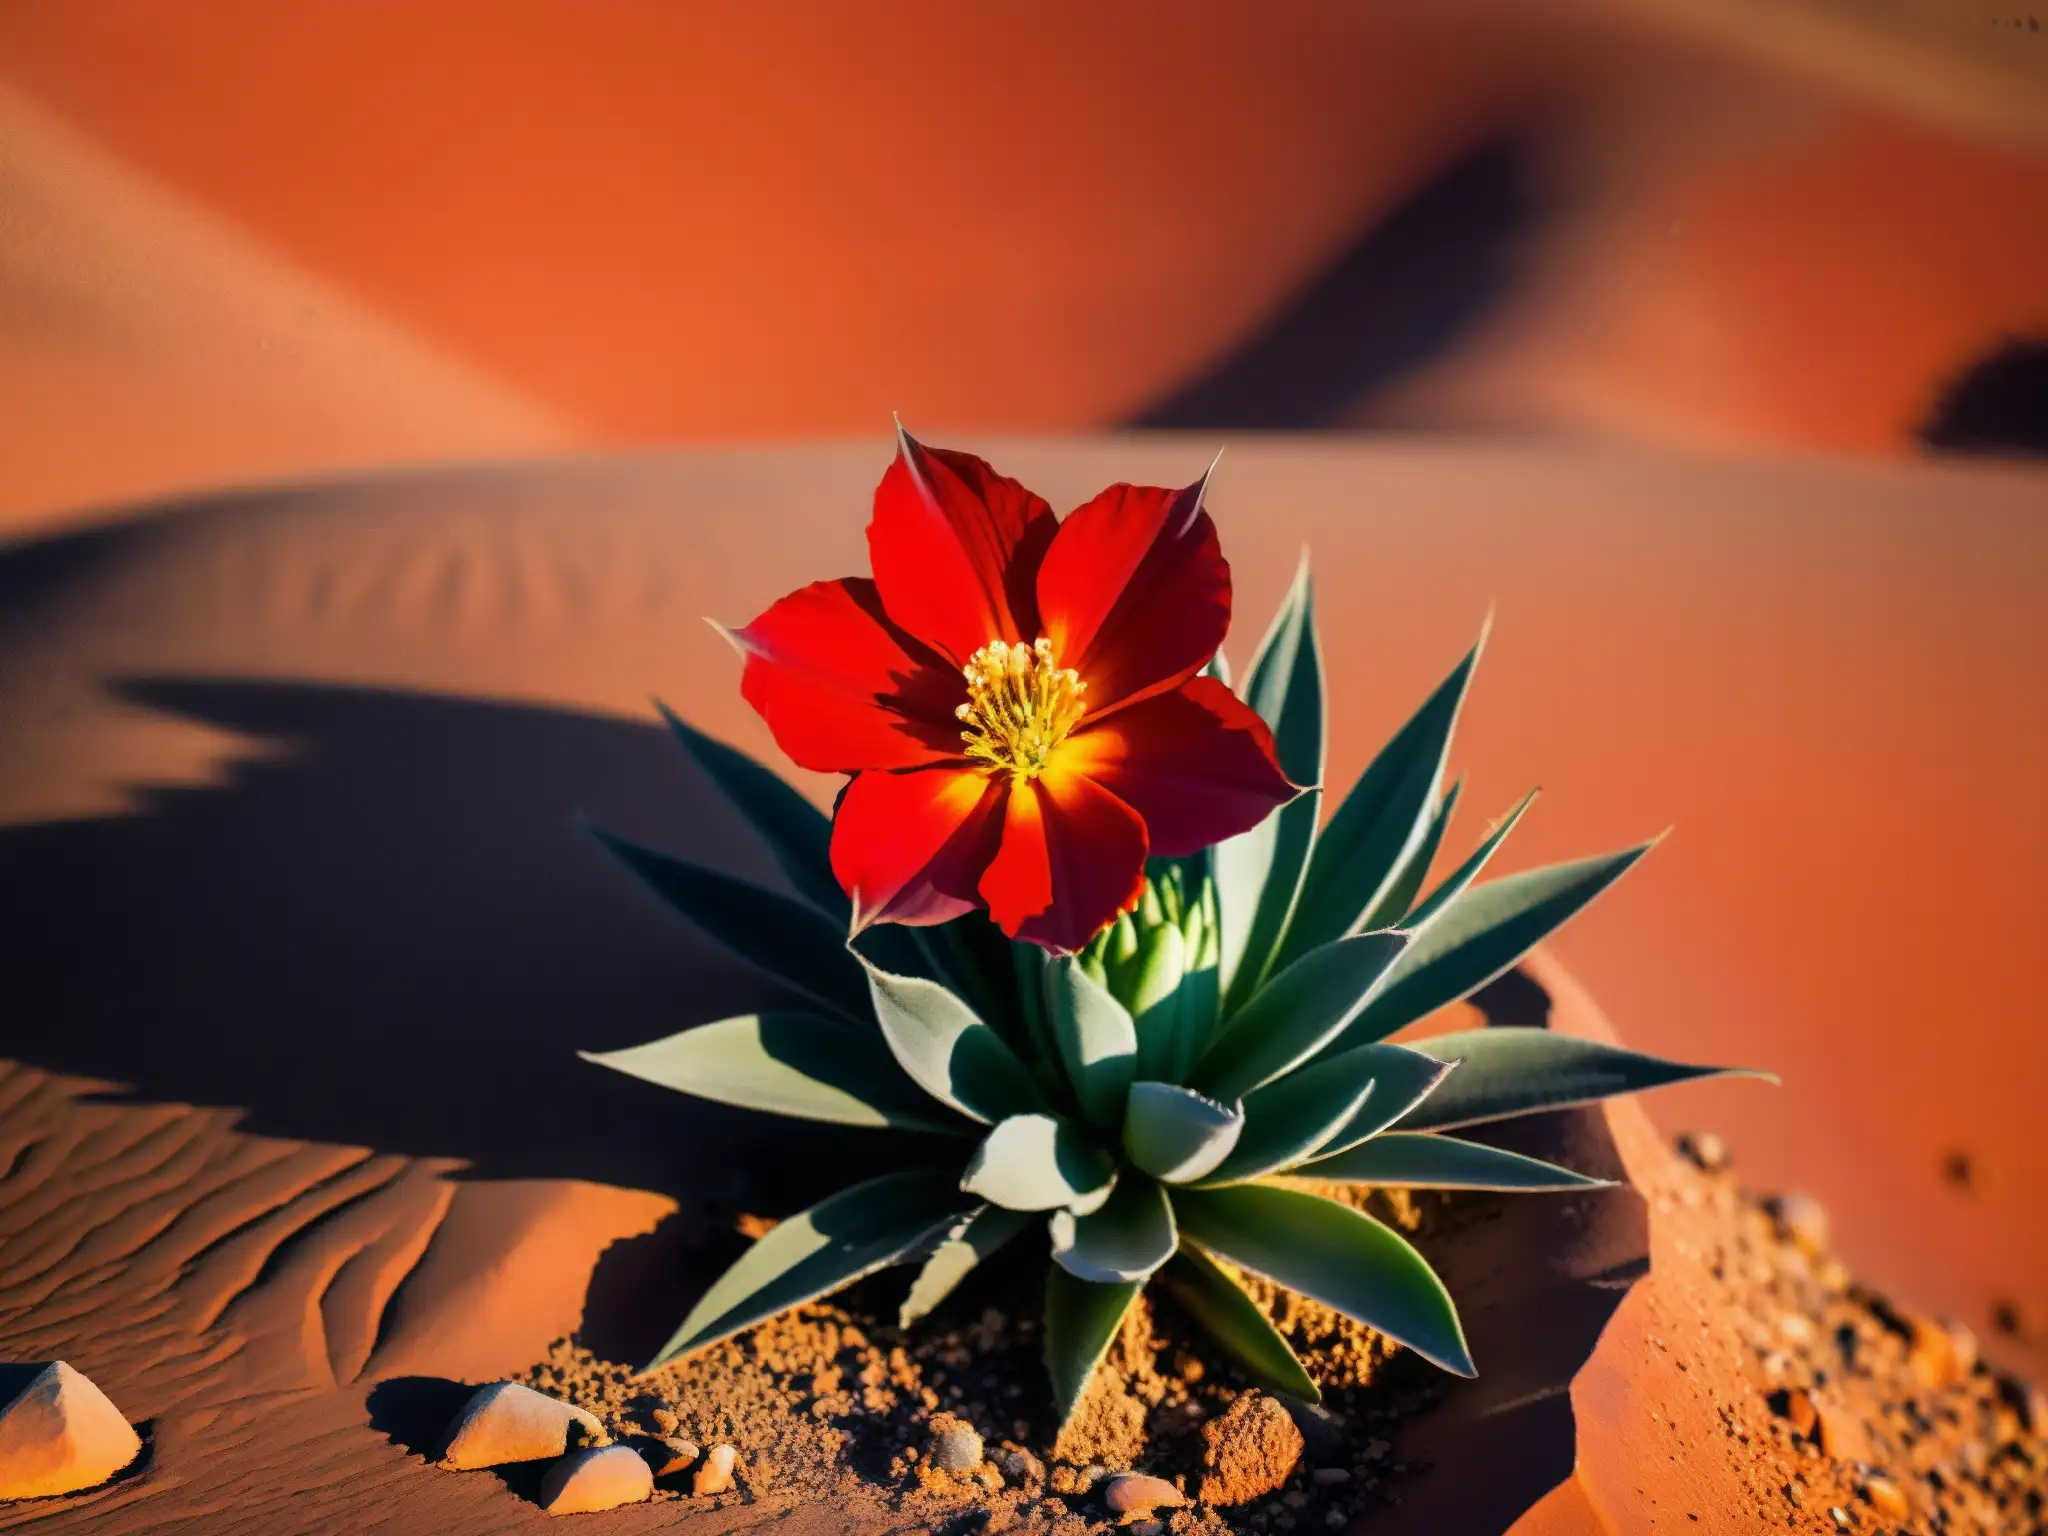 La leyenda de la Añañuca florece en el desierto de Atacama, mostrando su belleza y resiliencia en un paisaje árido y legendario